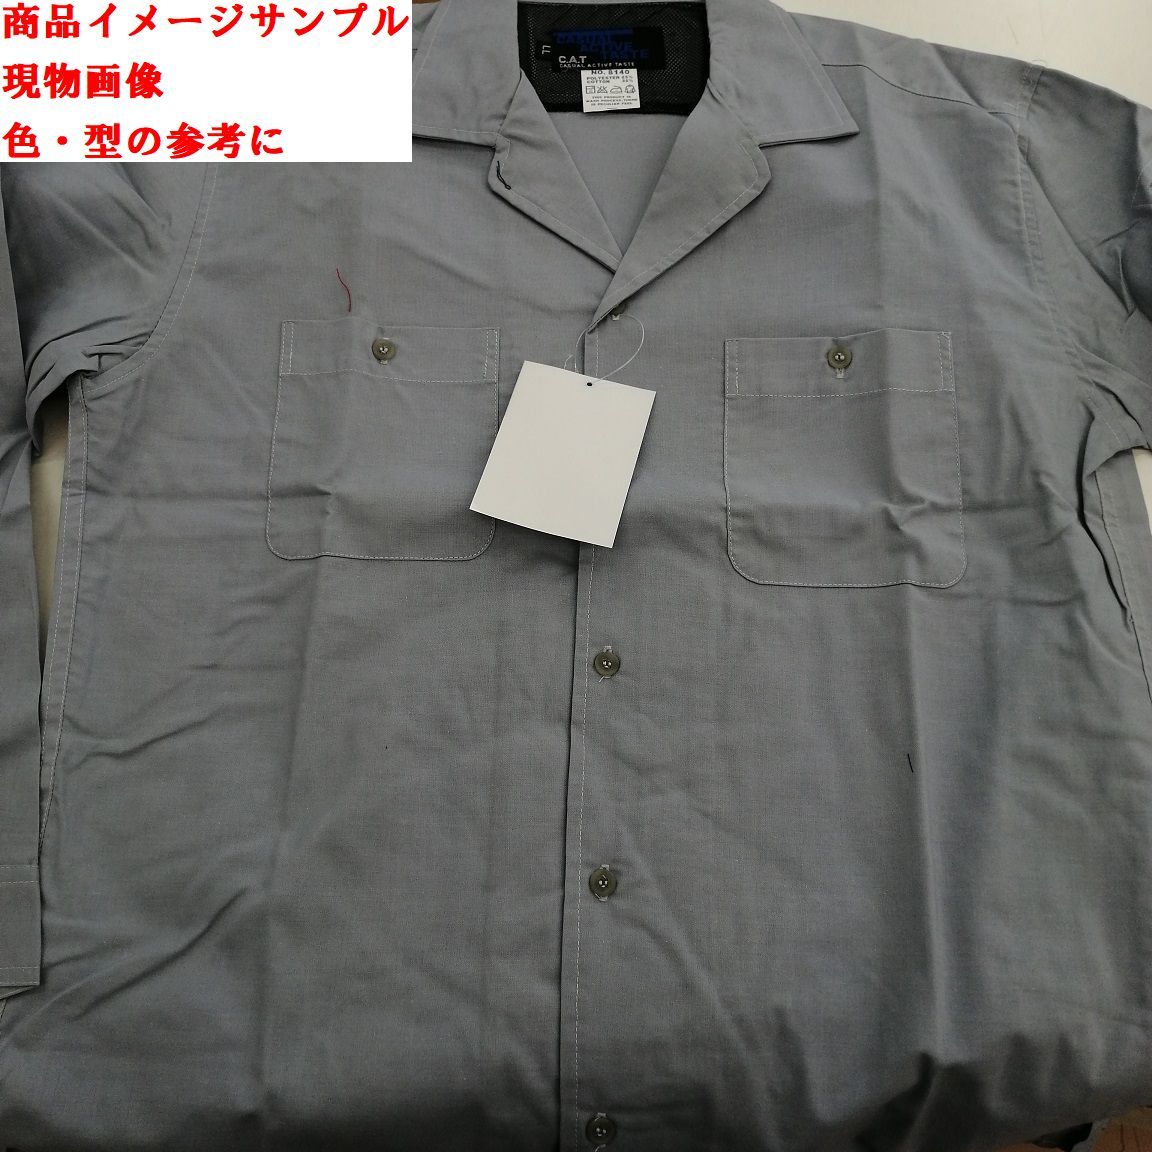 5-3/10 3 листов комплект 3L размер C(021 silver gray 8140krehifk рубашка с длинным рукавом рубашка work shirt рабочая одежда 